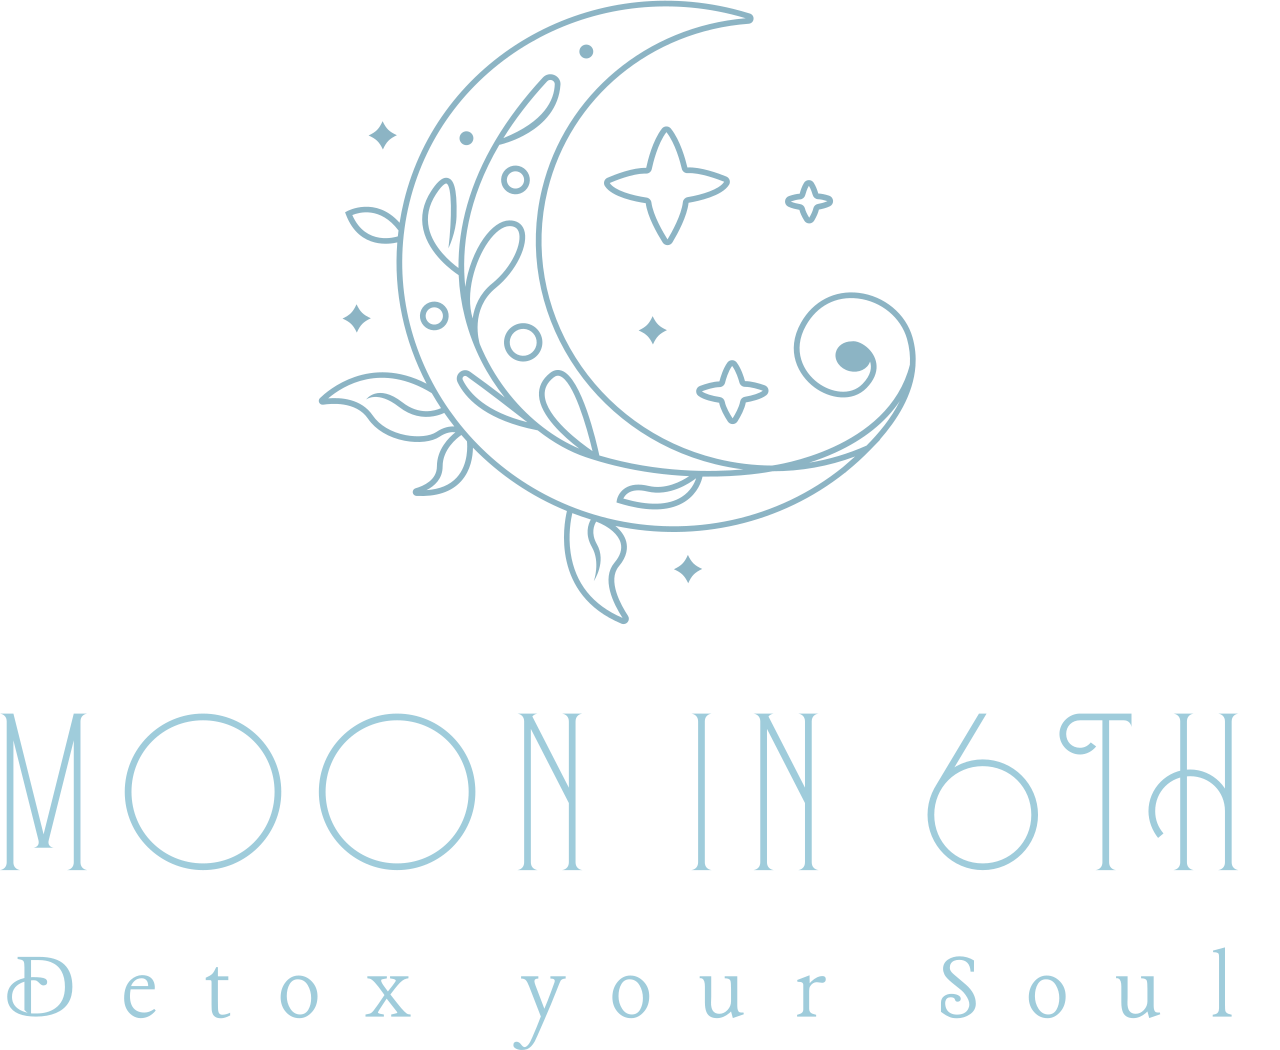 Moon in 6th's logo